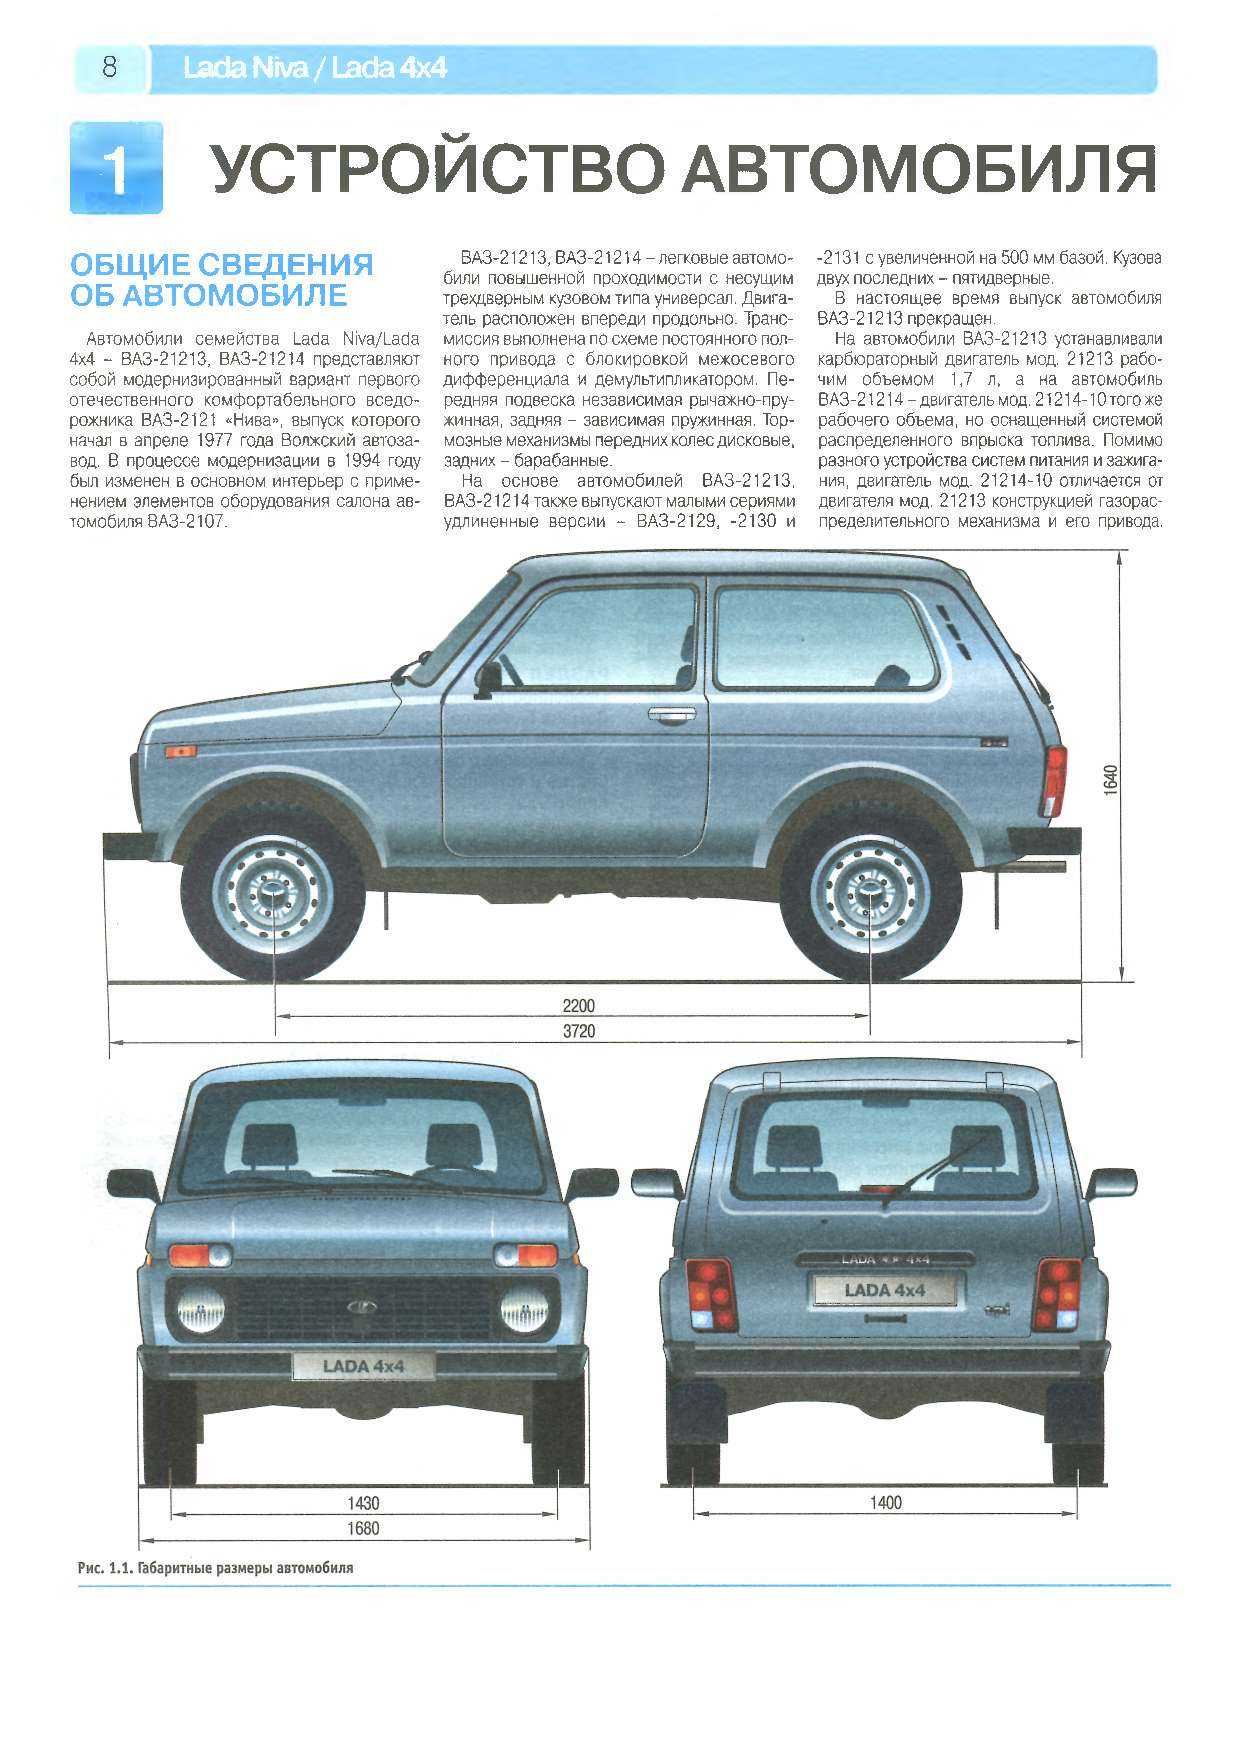 Модификации ваз 2121 нива - sovietcars.net